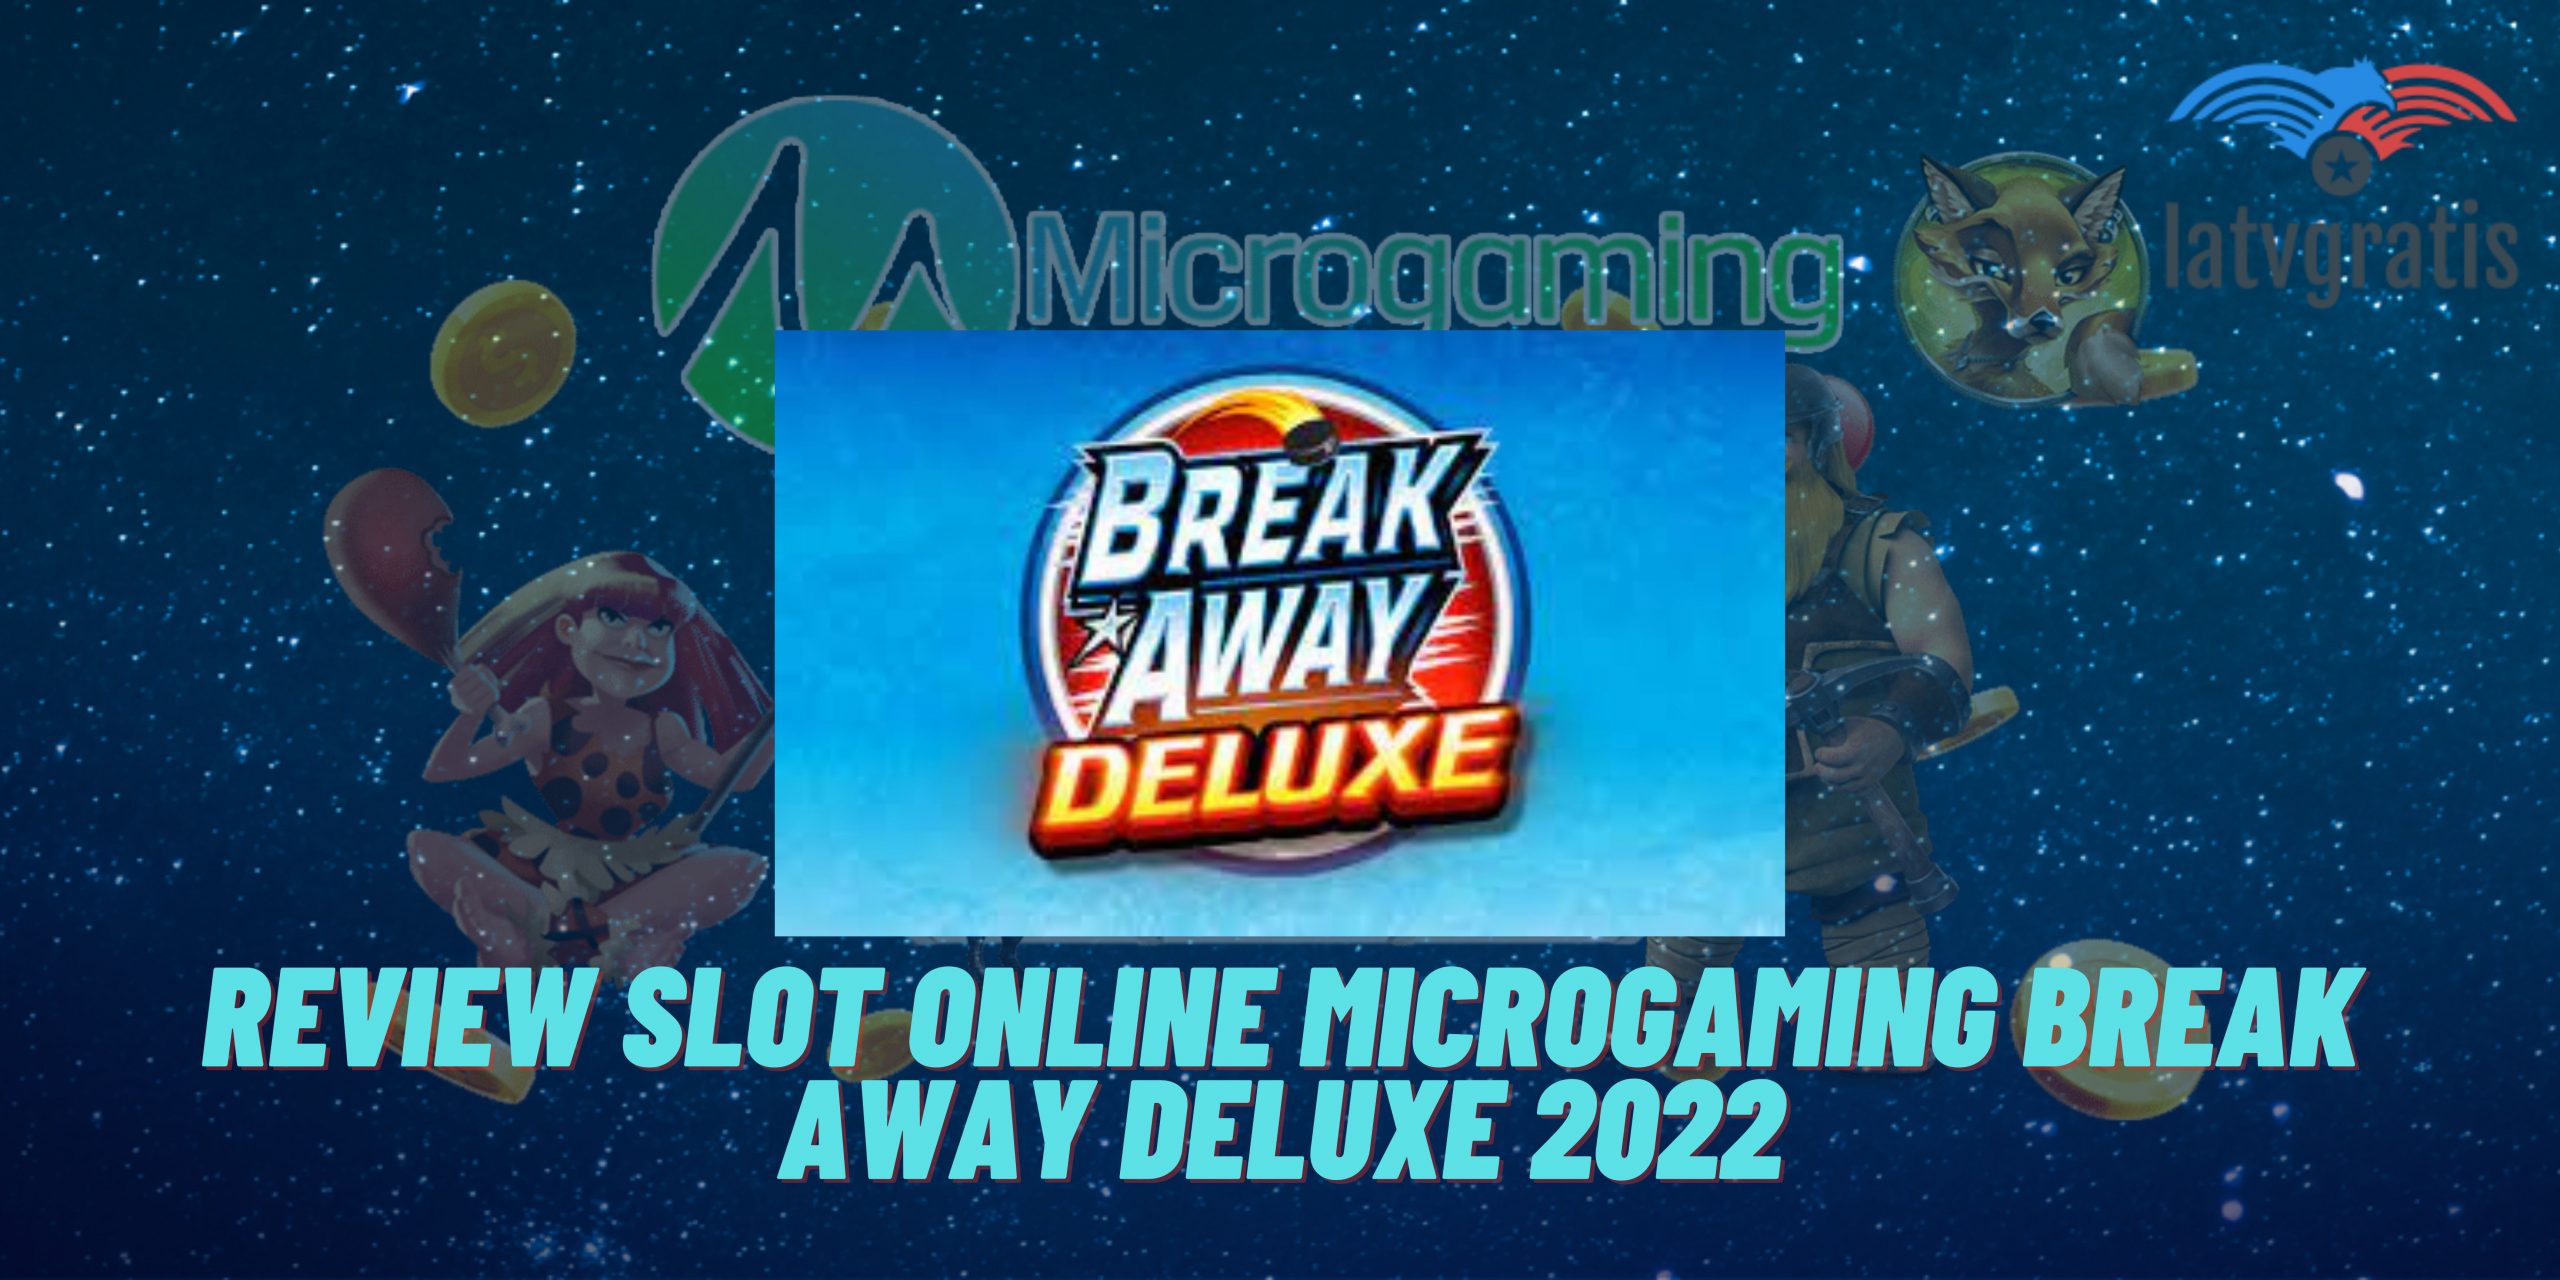 Review Slot Online Microgaming Break Away Deluxe 2022